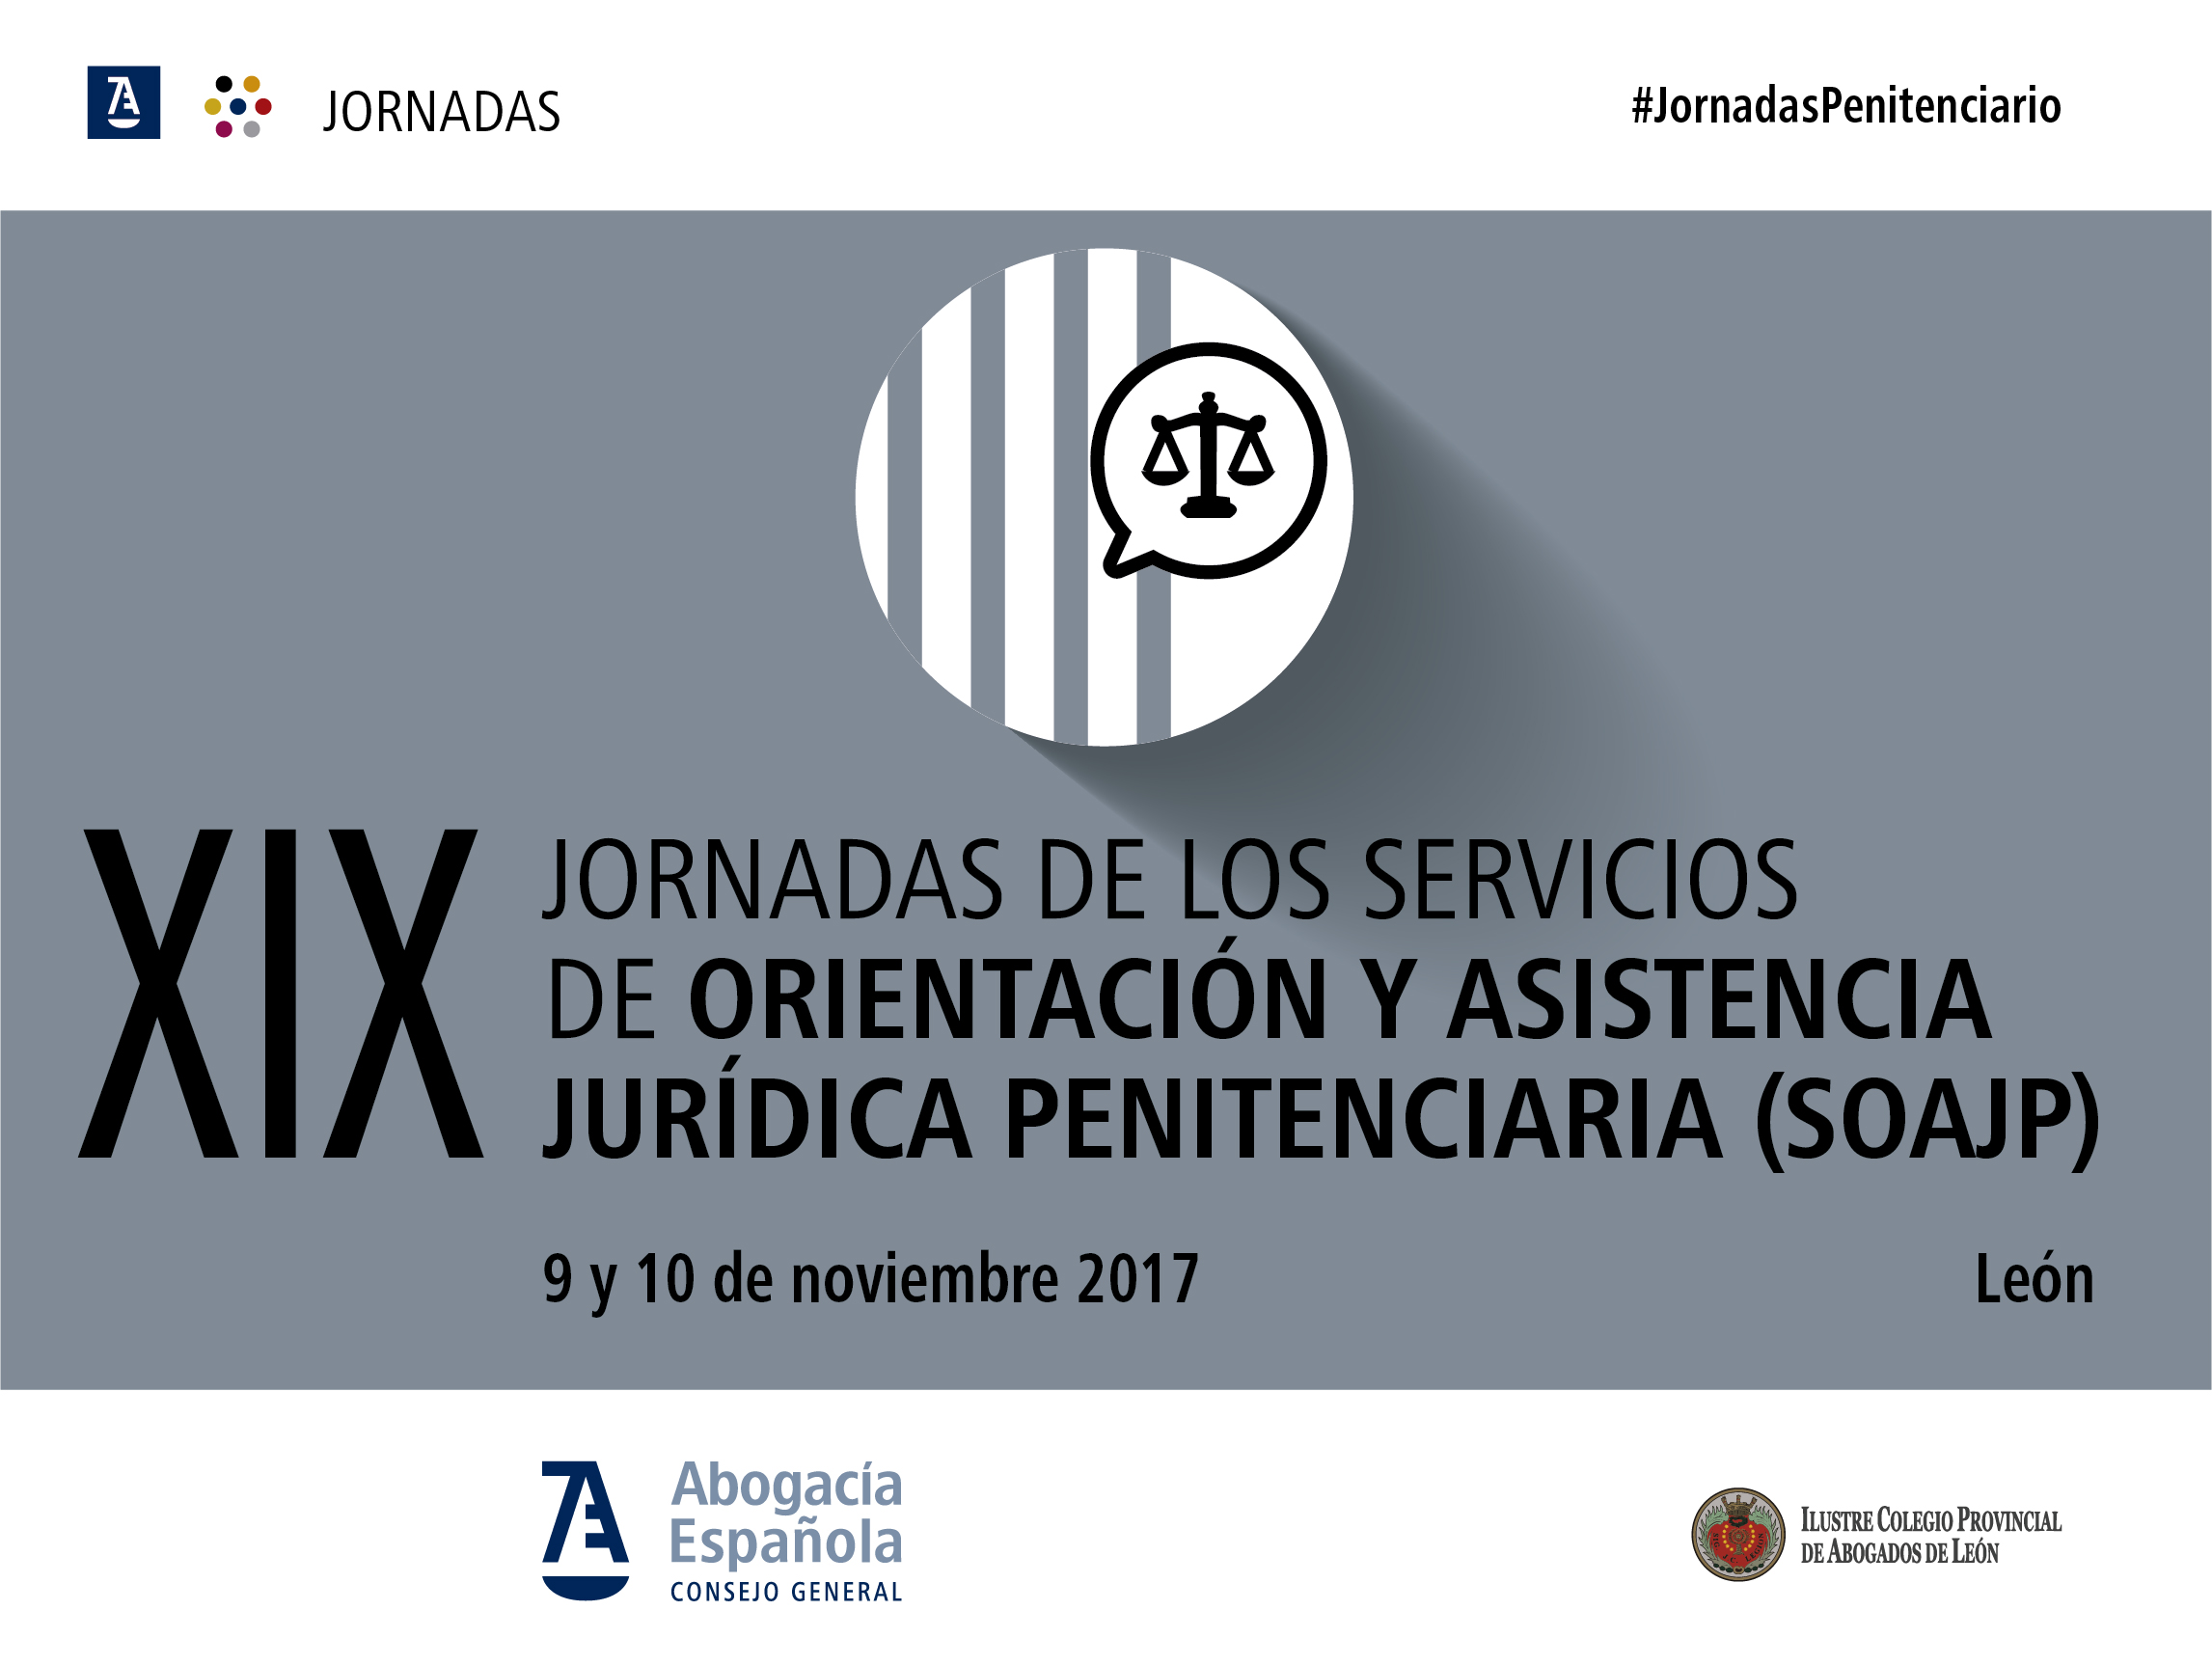 XIX Jornadas de León. La preocupación por el Derecho Penitenciario